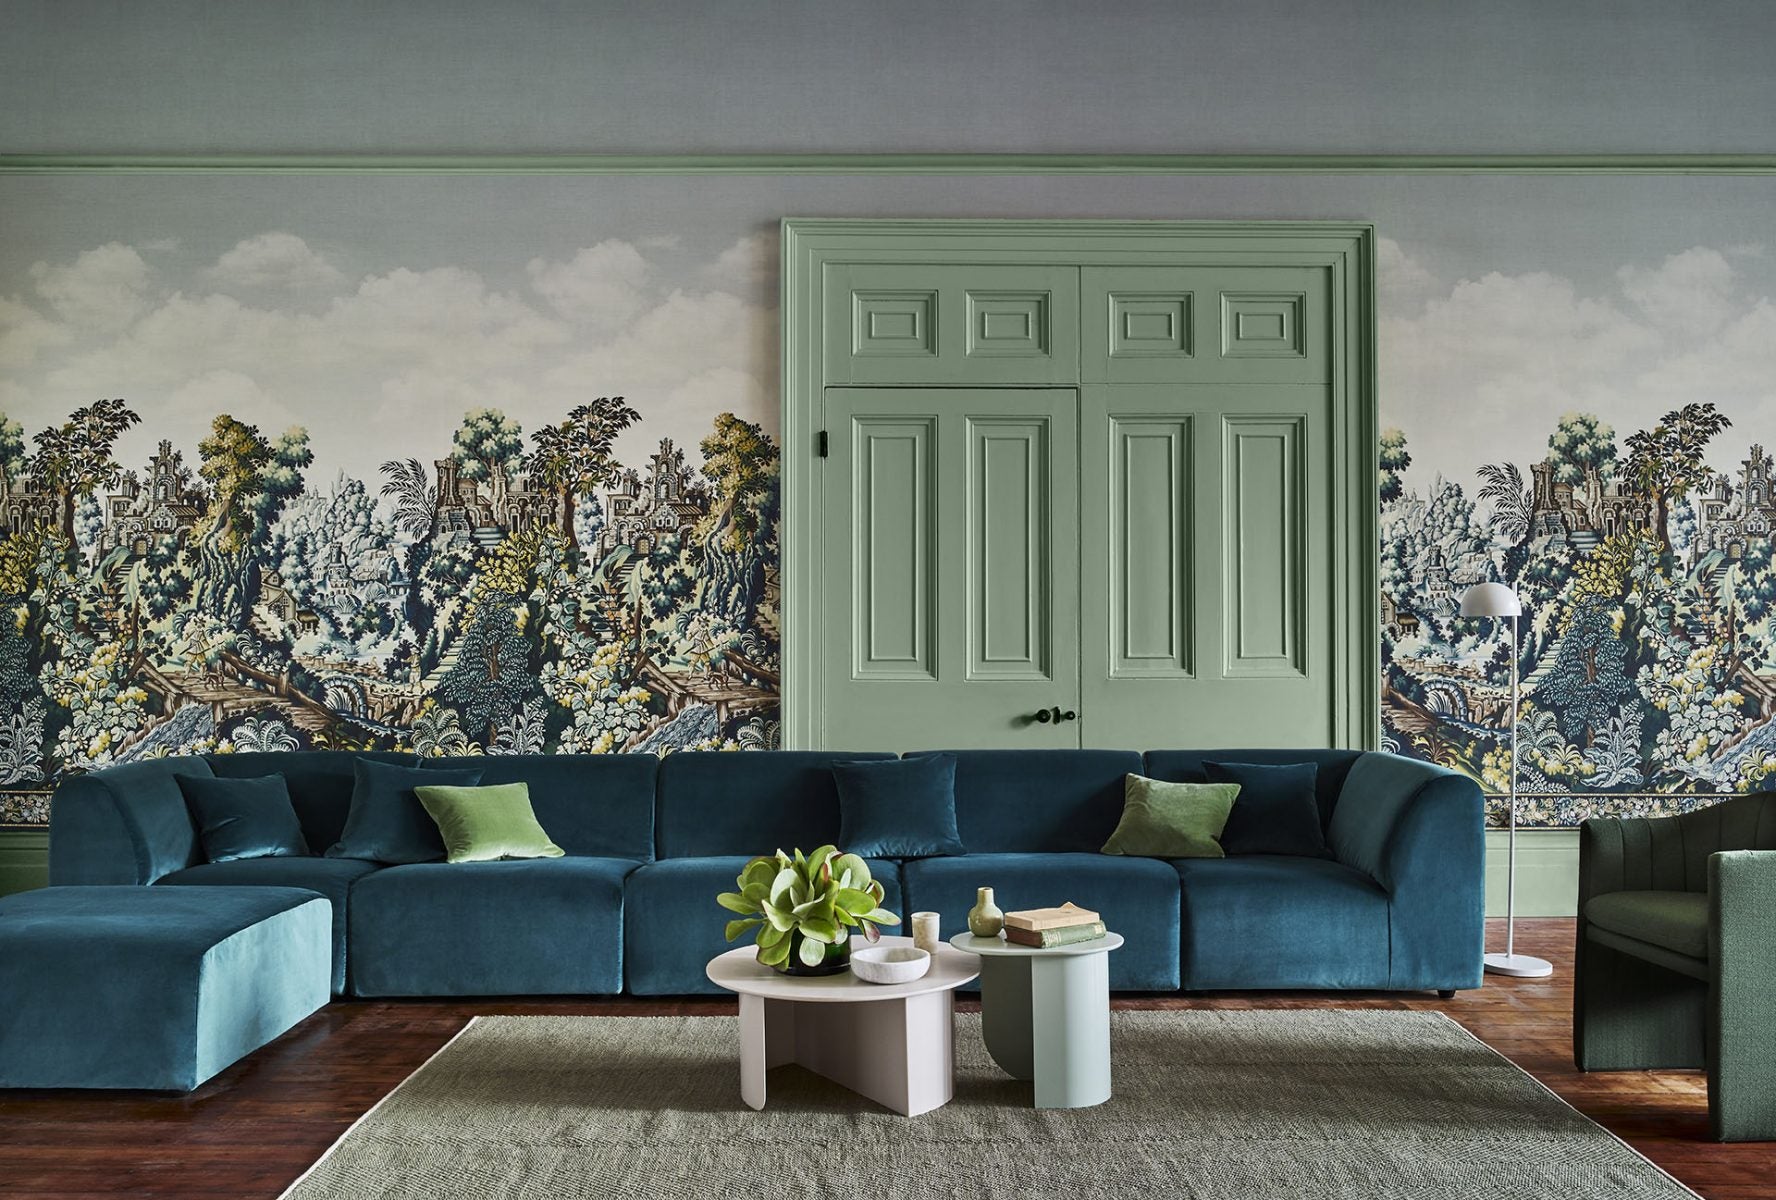 Na zdjęciu znajduje się różowy parawan, przed którym stoi różowy, pikowany fotel. Na ścianie znajduje się tapeta przedstawiająca malowniczy ogród.